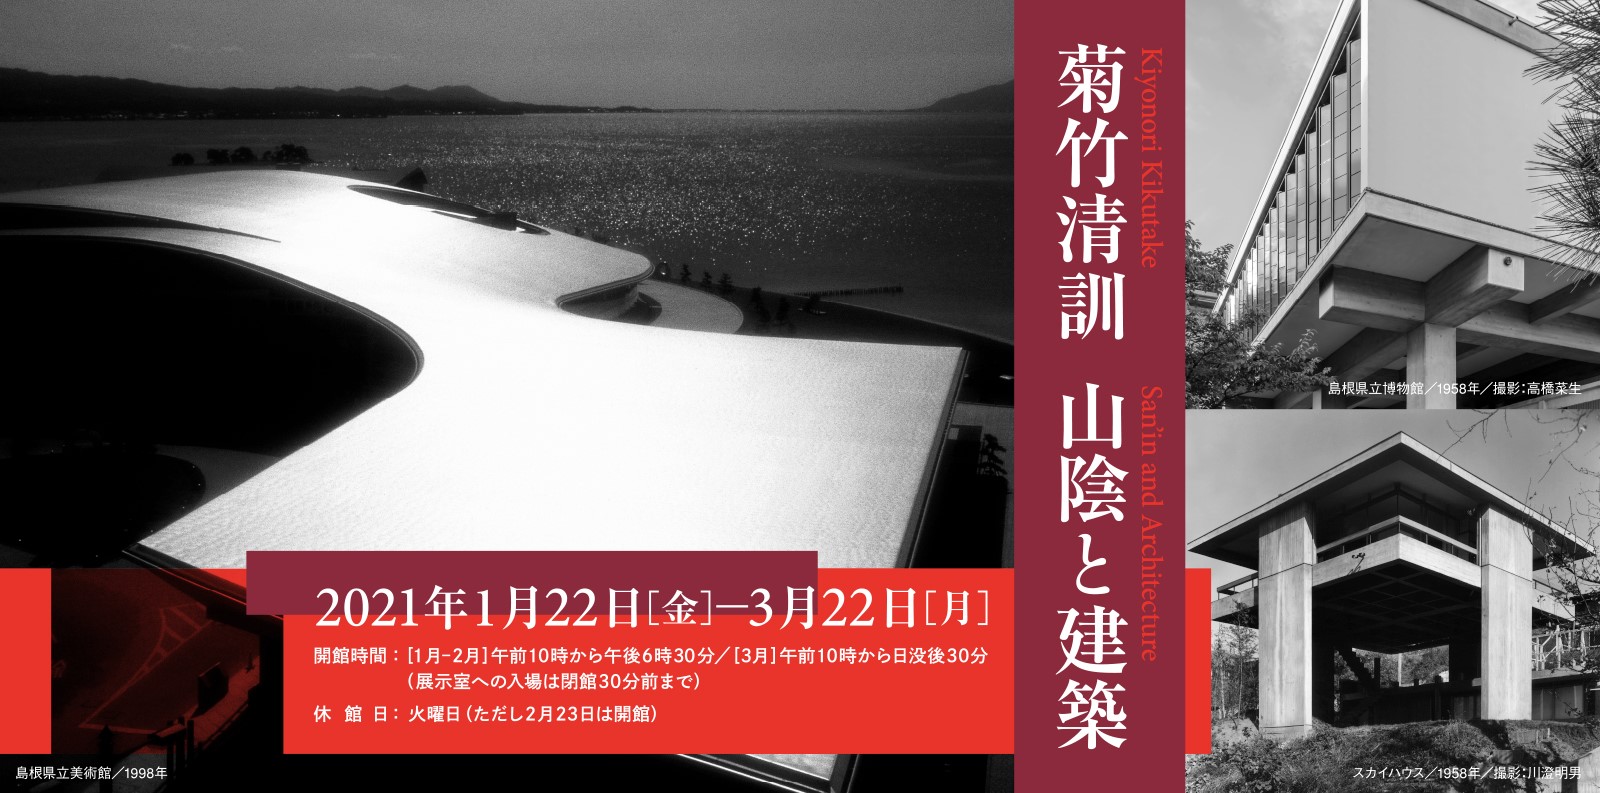 島根県立美術館、数々の名作建築を残した菊竹清訓をテーマに 企画展